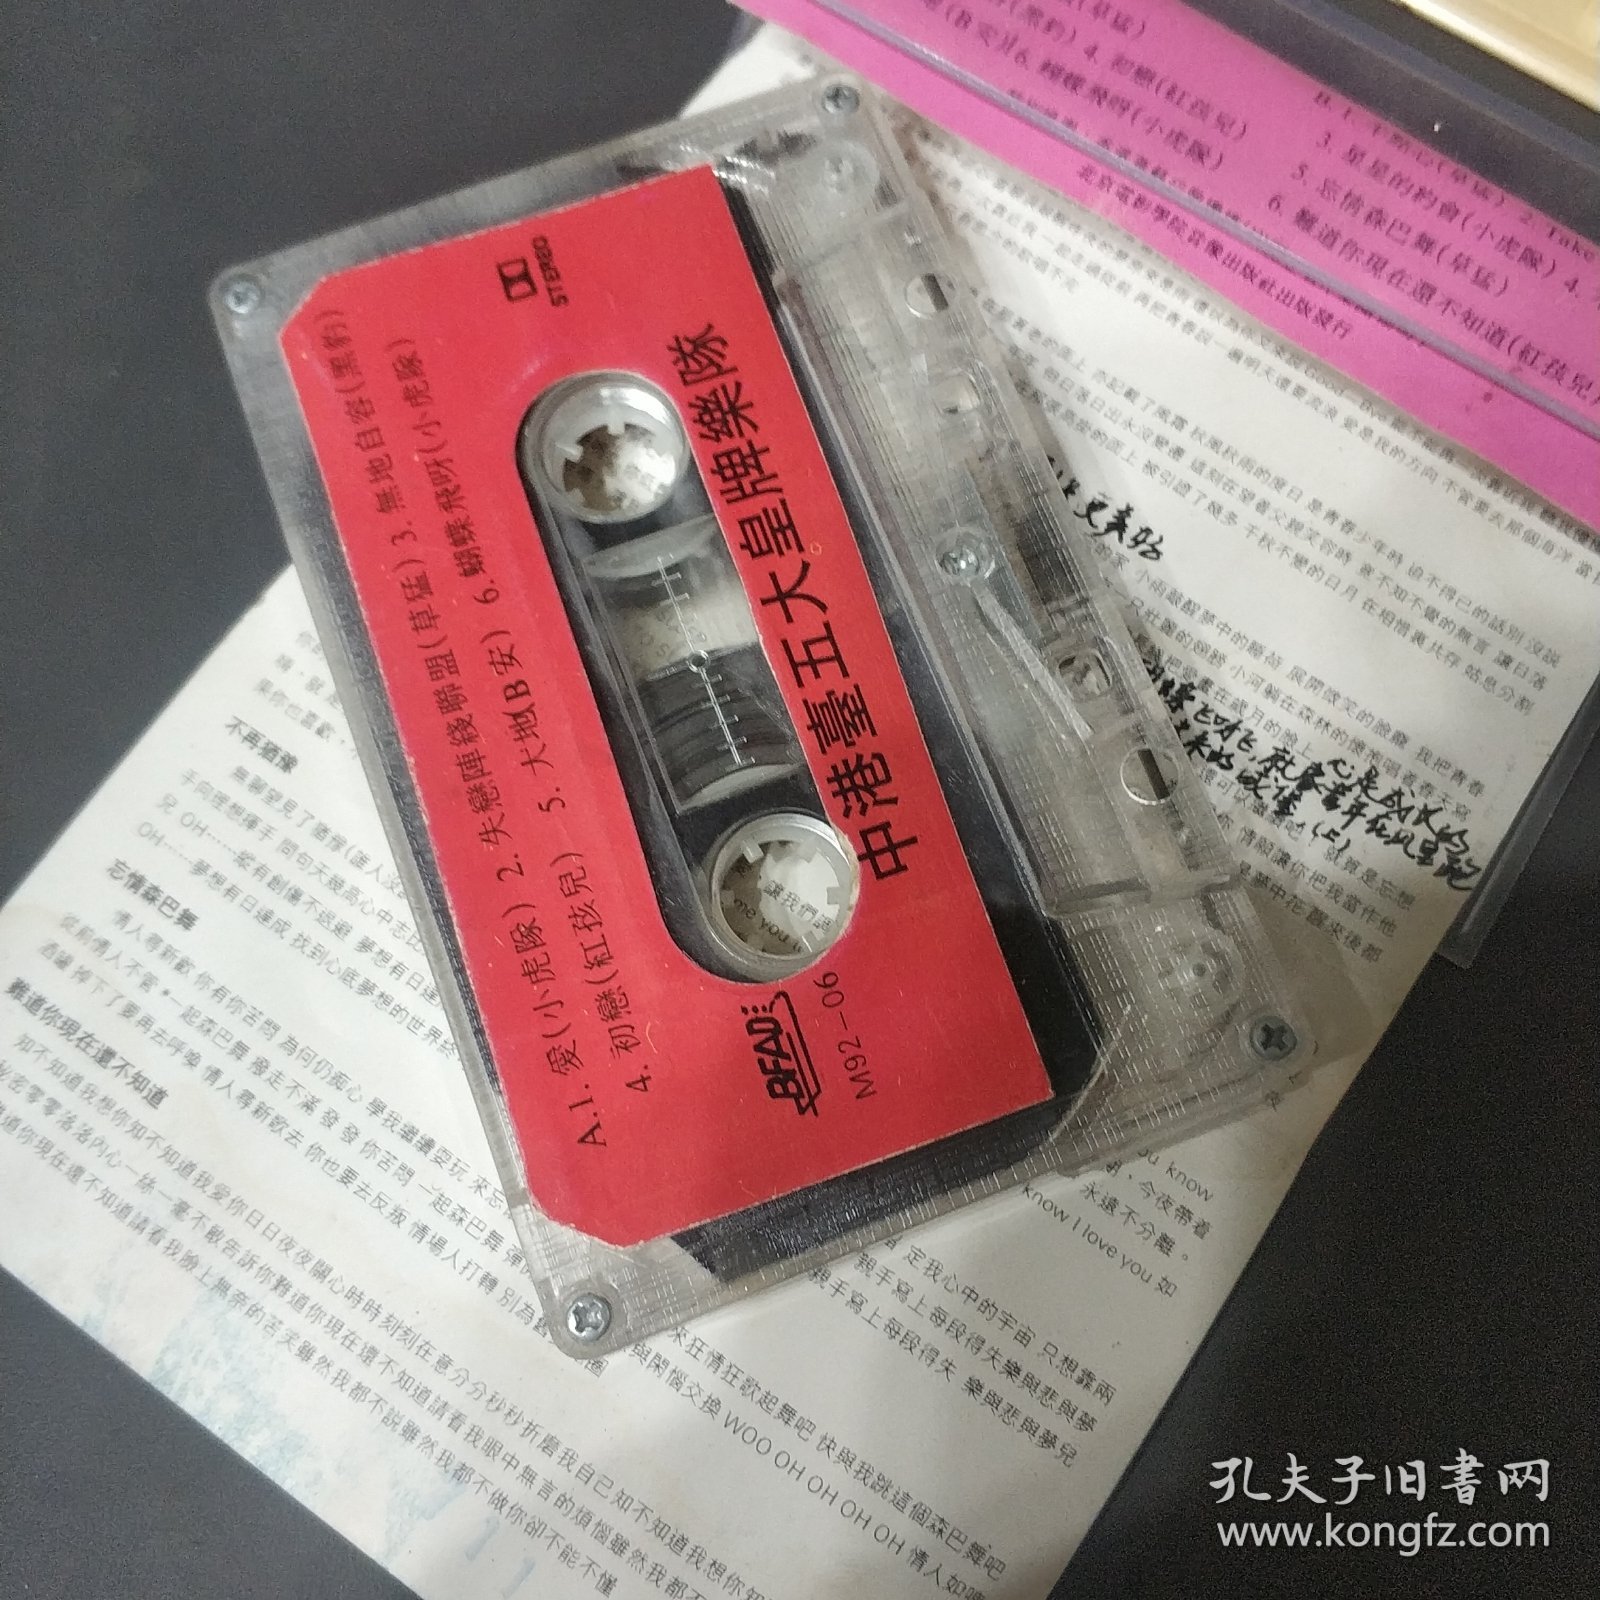 中港台五大皇牌乐队 磁带